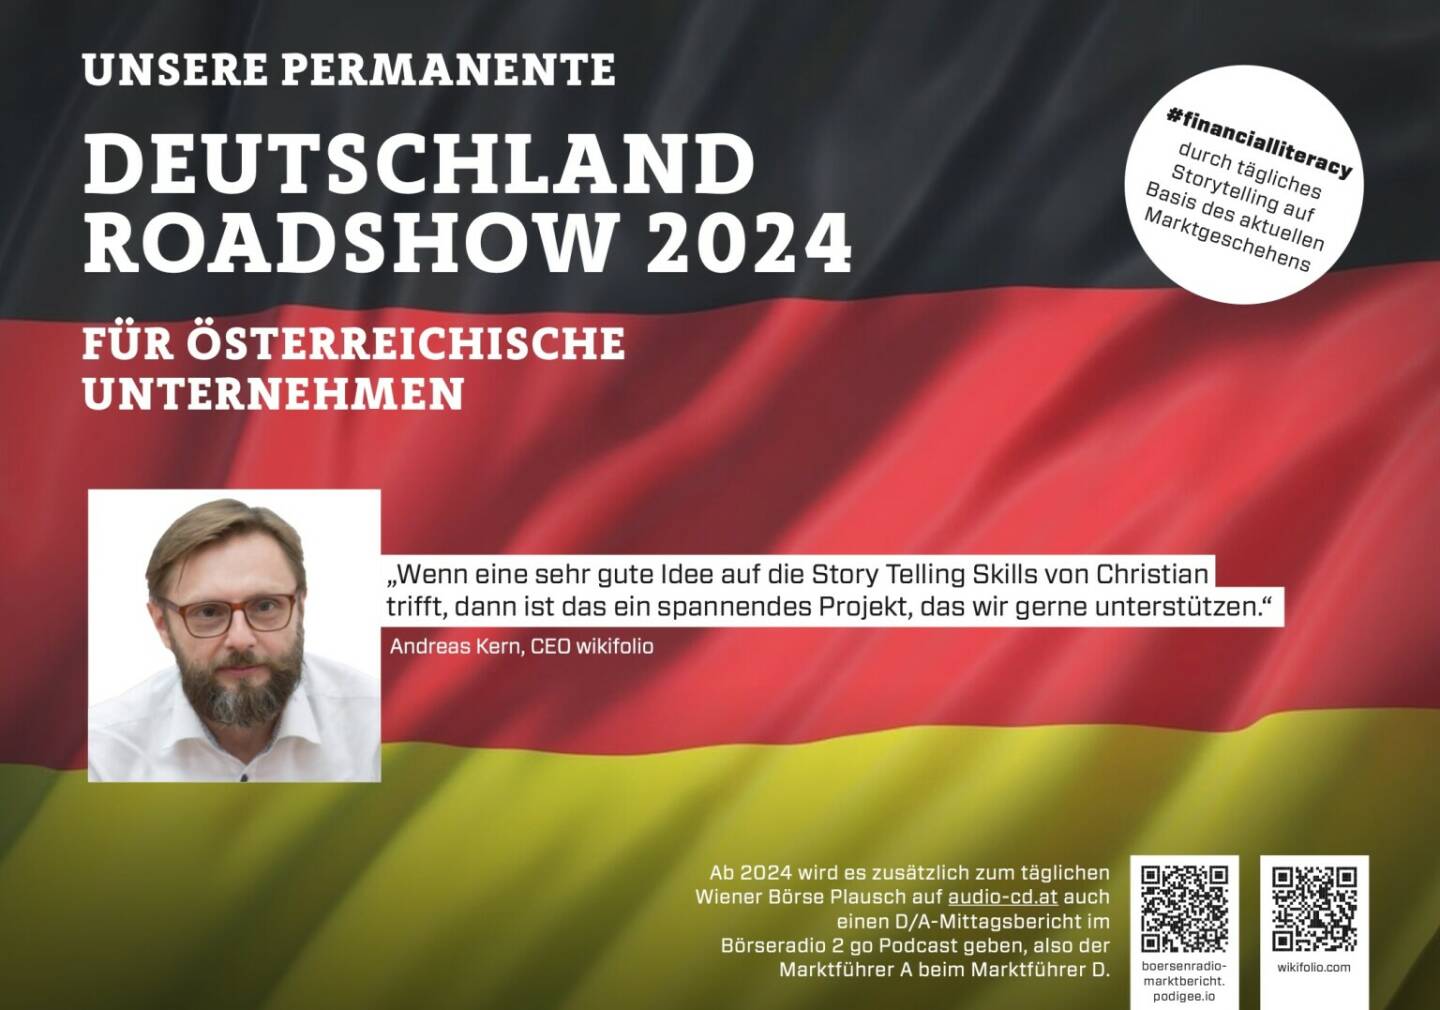 Andreas Kern mit wikifolio 2024 mit uns auf Deutschlandroadshow für https://boersenradio-marktbericht.podigee.io